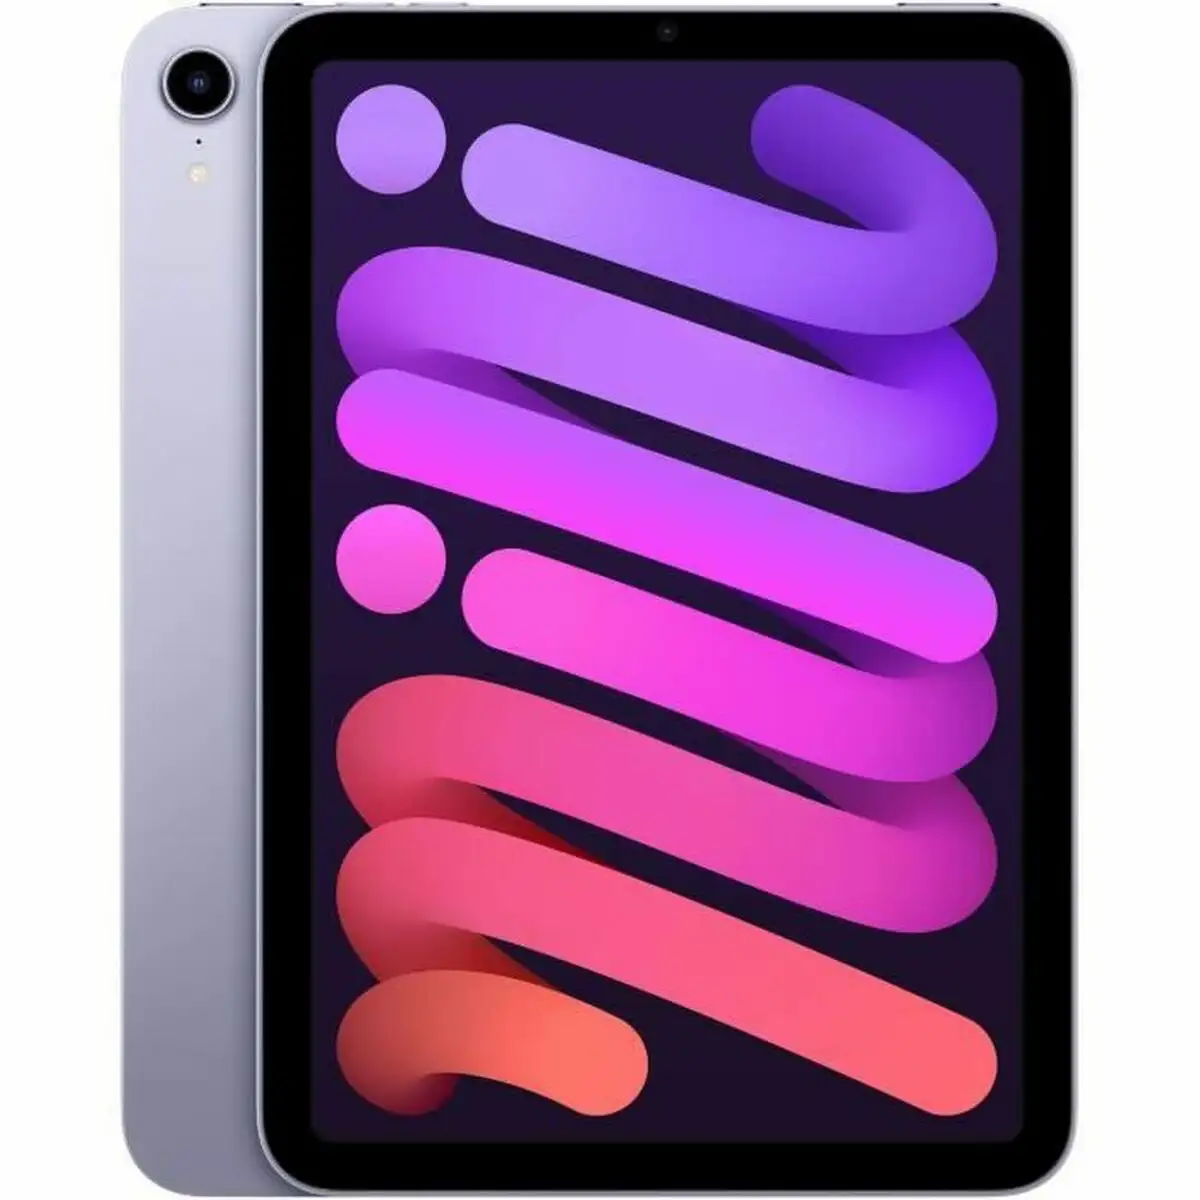 Tablette apple ipad mini 64 gb a15 violet pourpre 64 gb_1965. DIAYTAR SENEGAL - Là où Chaque Achat a du Sens. Explorez notre gamme et choisissez des produits qui racontent une histoire, du traditionnel au contemporain.